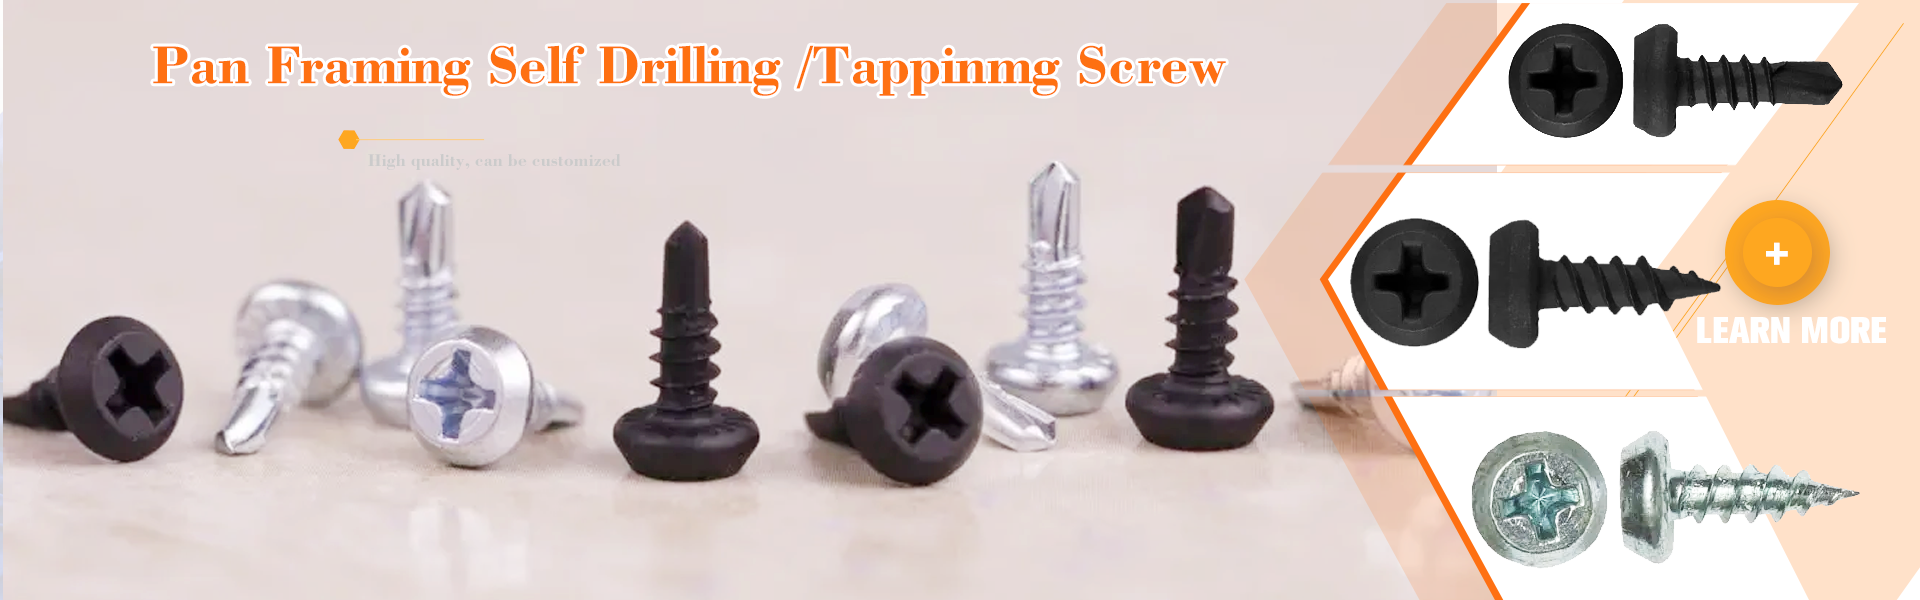 Pan Framing Head Self Drilling/Self Tapping Screw